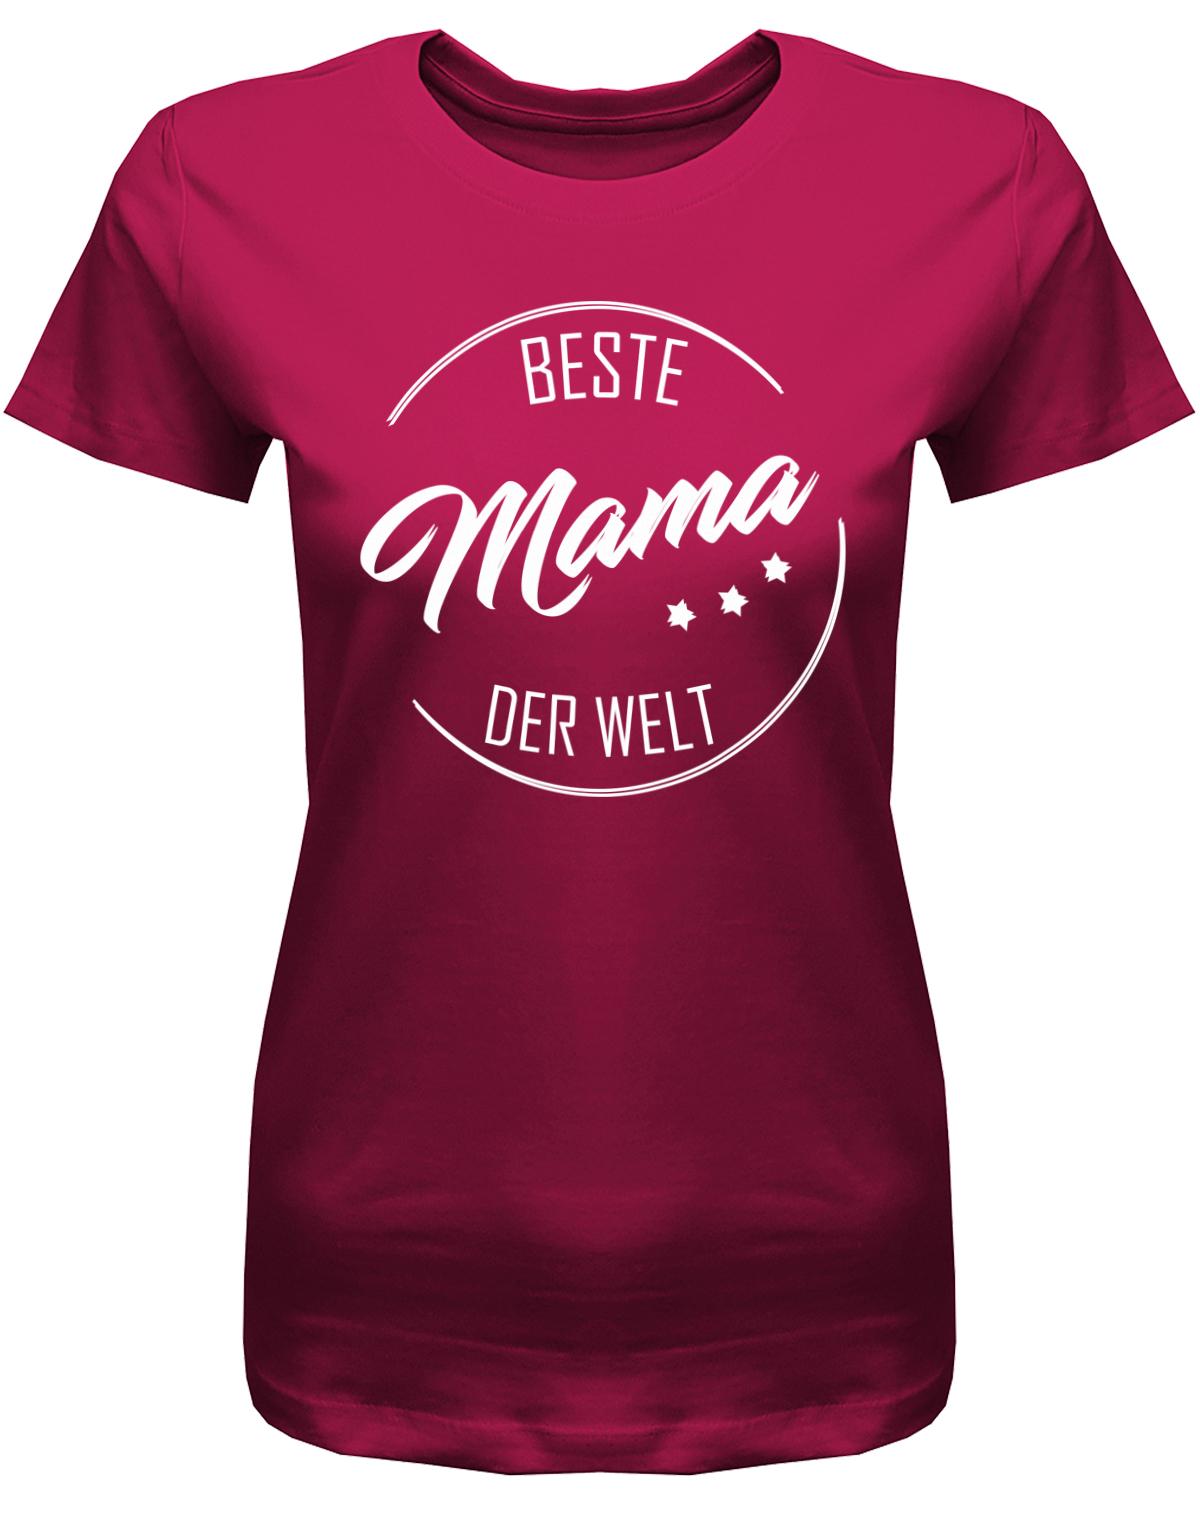 Beste Mama der Welt- Damen T-Shirt Geschenk-Muttertagsgeschenk-Sorbet